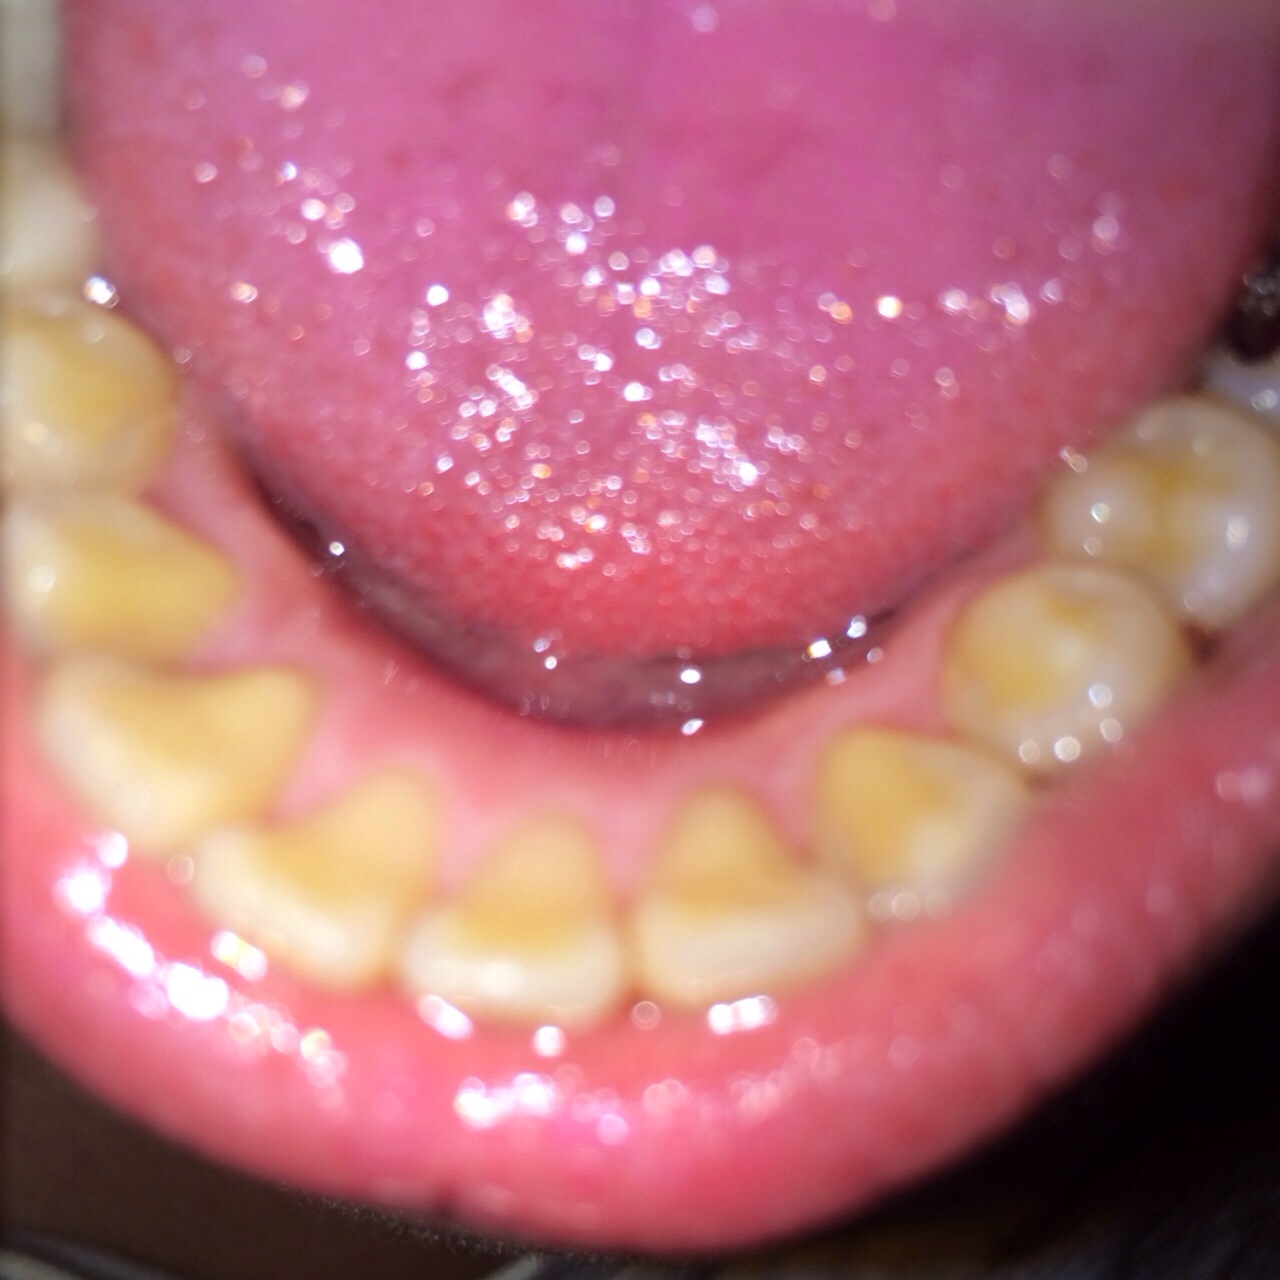 写真あり 歯の溝や裏が黄色い 虫歯でしょうか 歯チャンネル歯科相談室